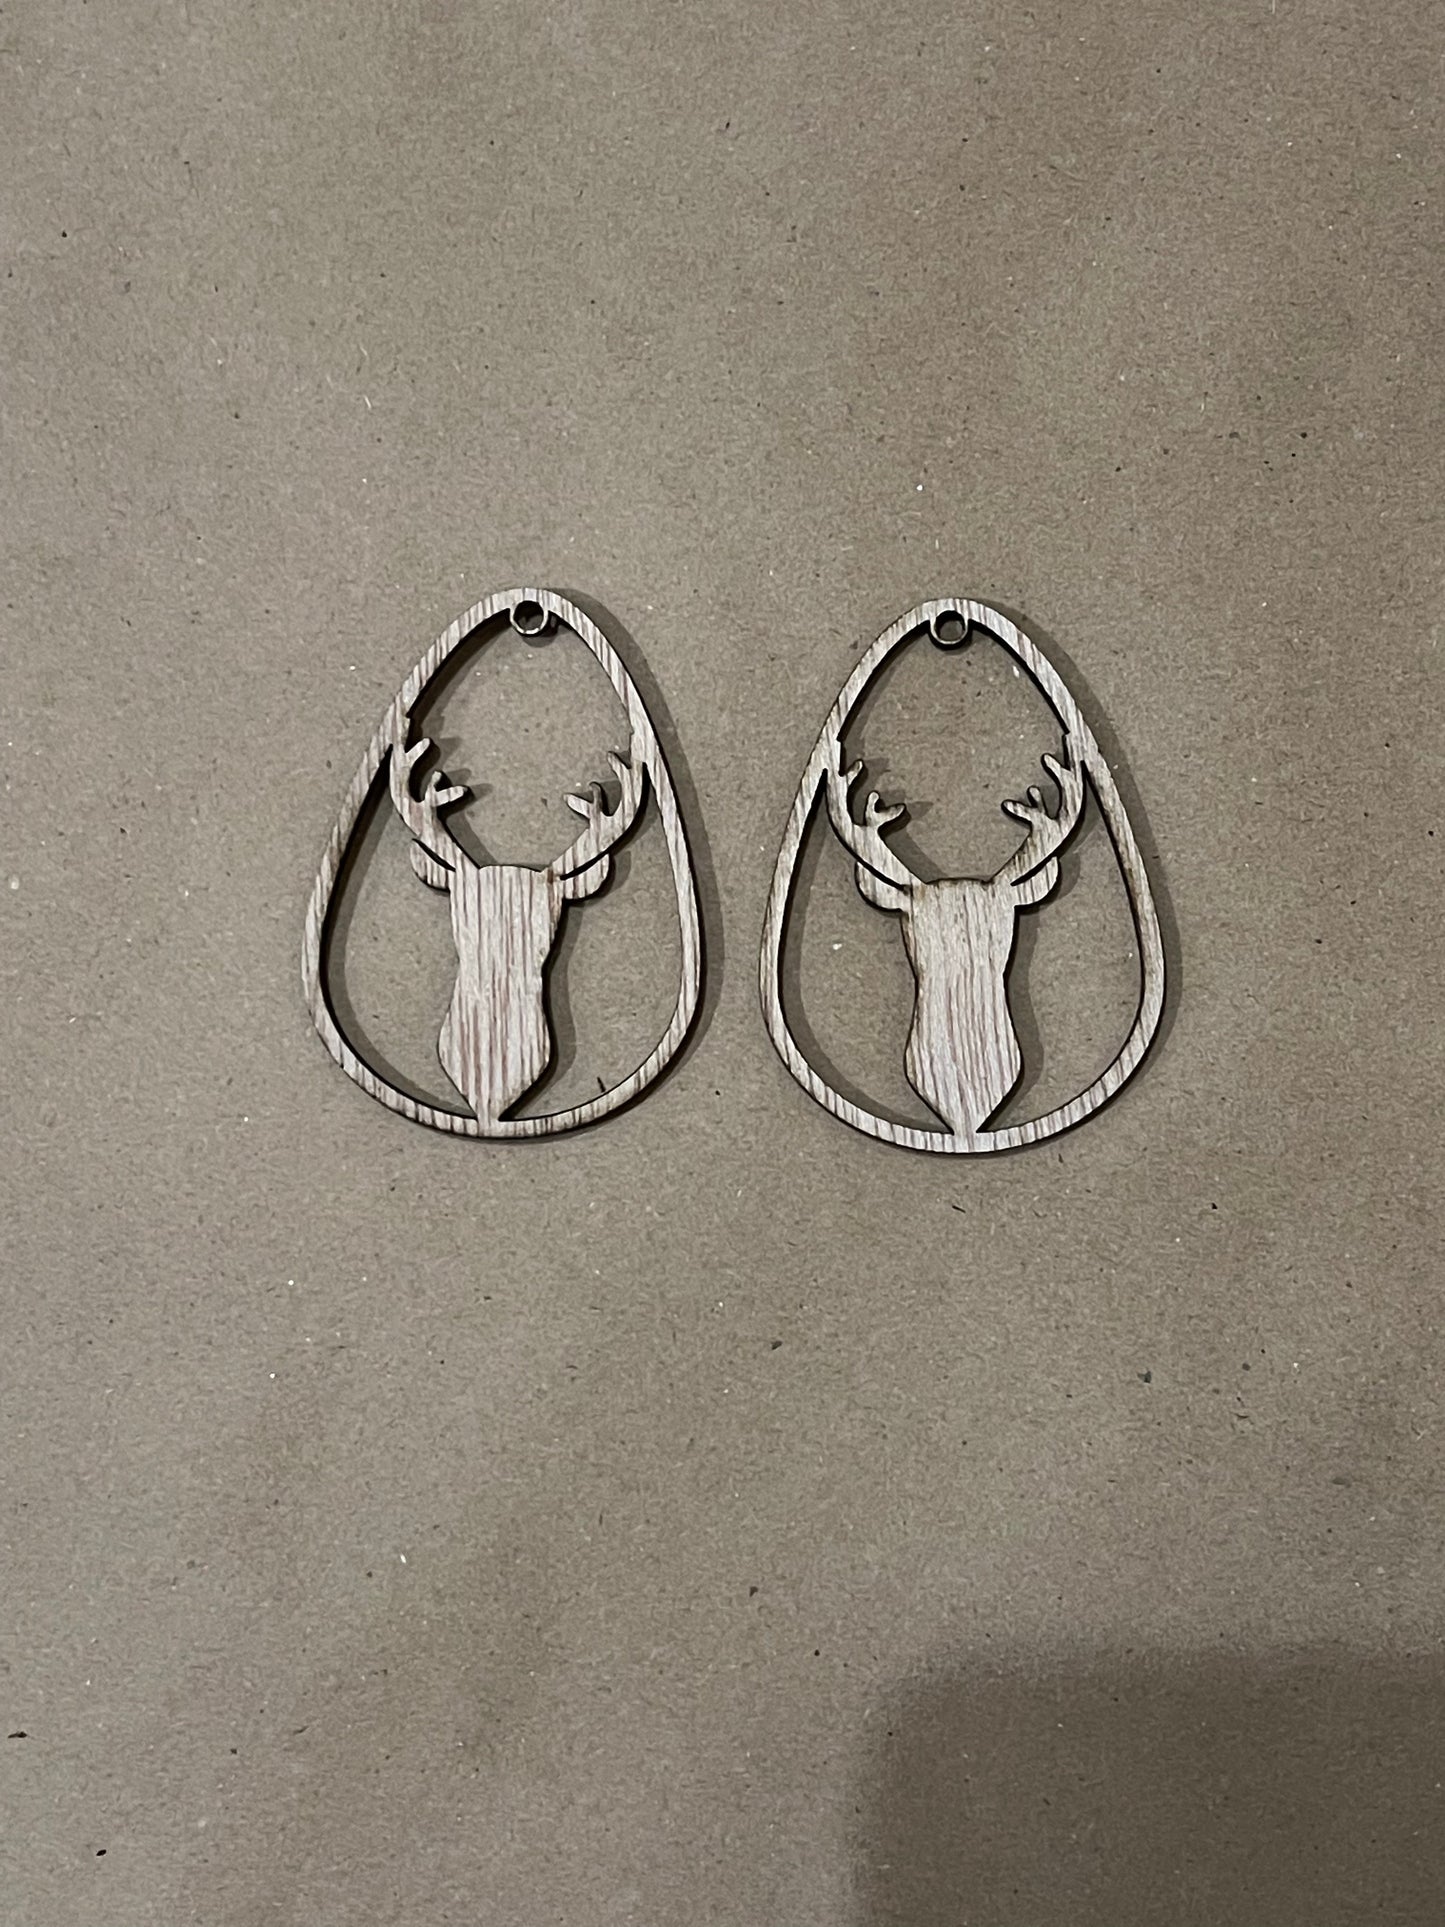 Deer Droplet Blank Wood Earrings. DIY jewelry. Unfinished laser cut wood jewelry. Wood earring blanks. Unfinished wood earrings. Wood jewelry blanks.